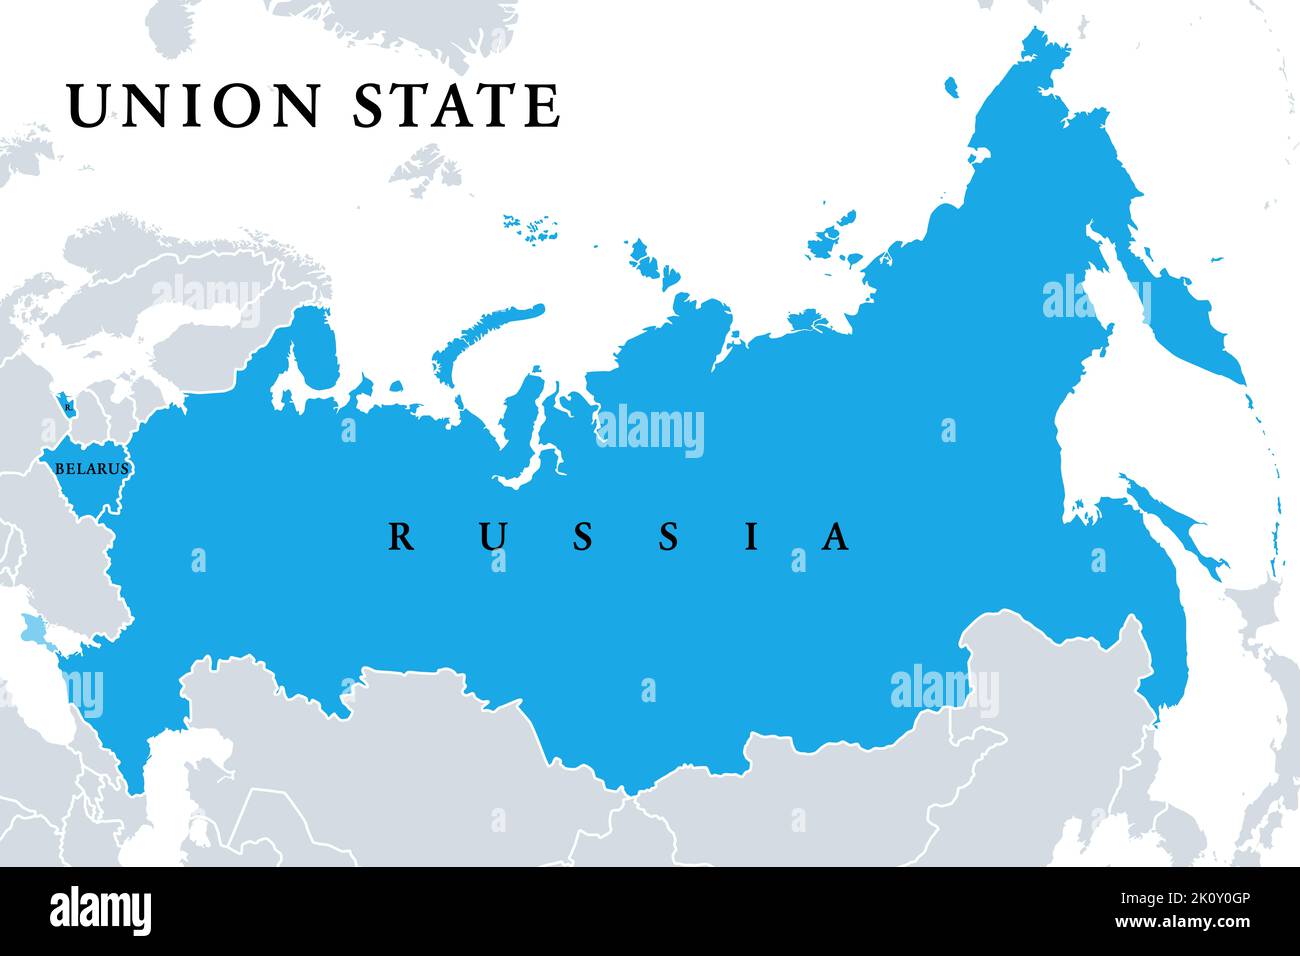 Etat de l'Union, Etats membres, carte politique. Officiellement, l'Etat de l'Union de la Russie et du Belarus, est une organisation supranationale. Banque D'Images